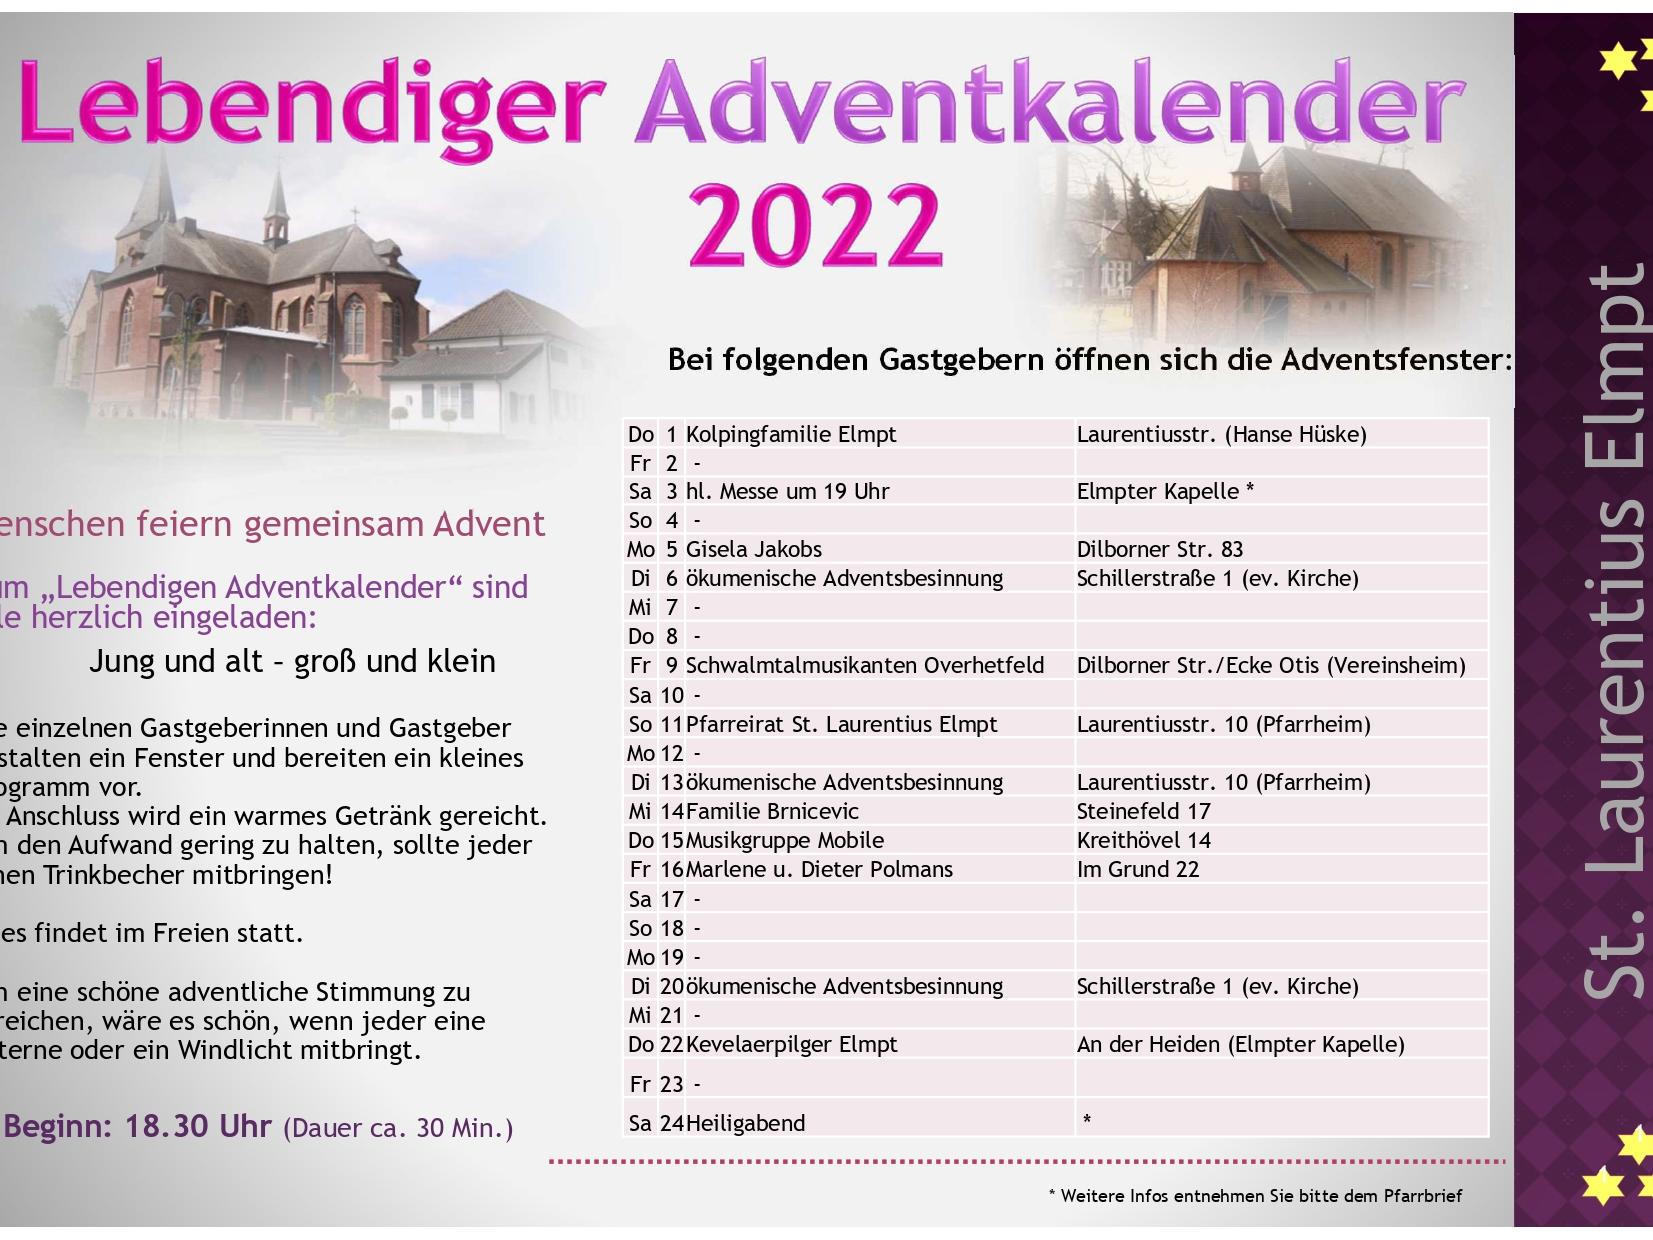 2022 Plakat Lebendiger Adventskalender.pptx [Schreibgeschützt]_pages-to-jpg-0001